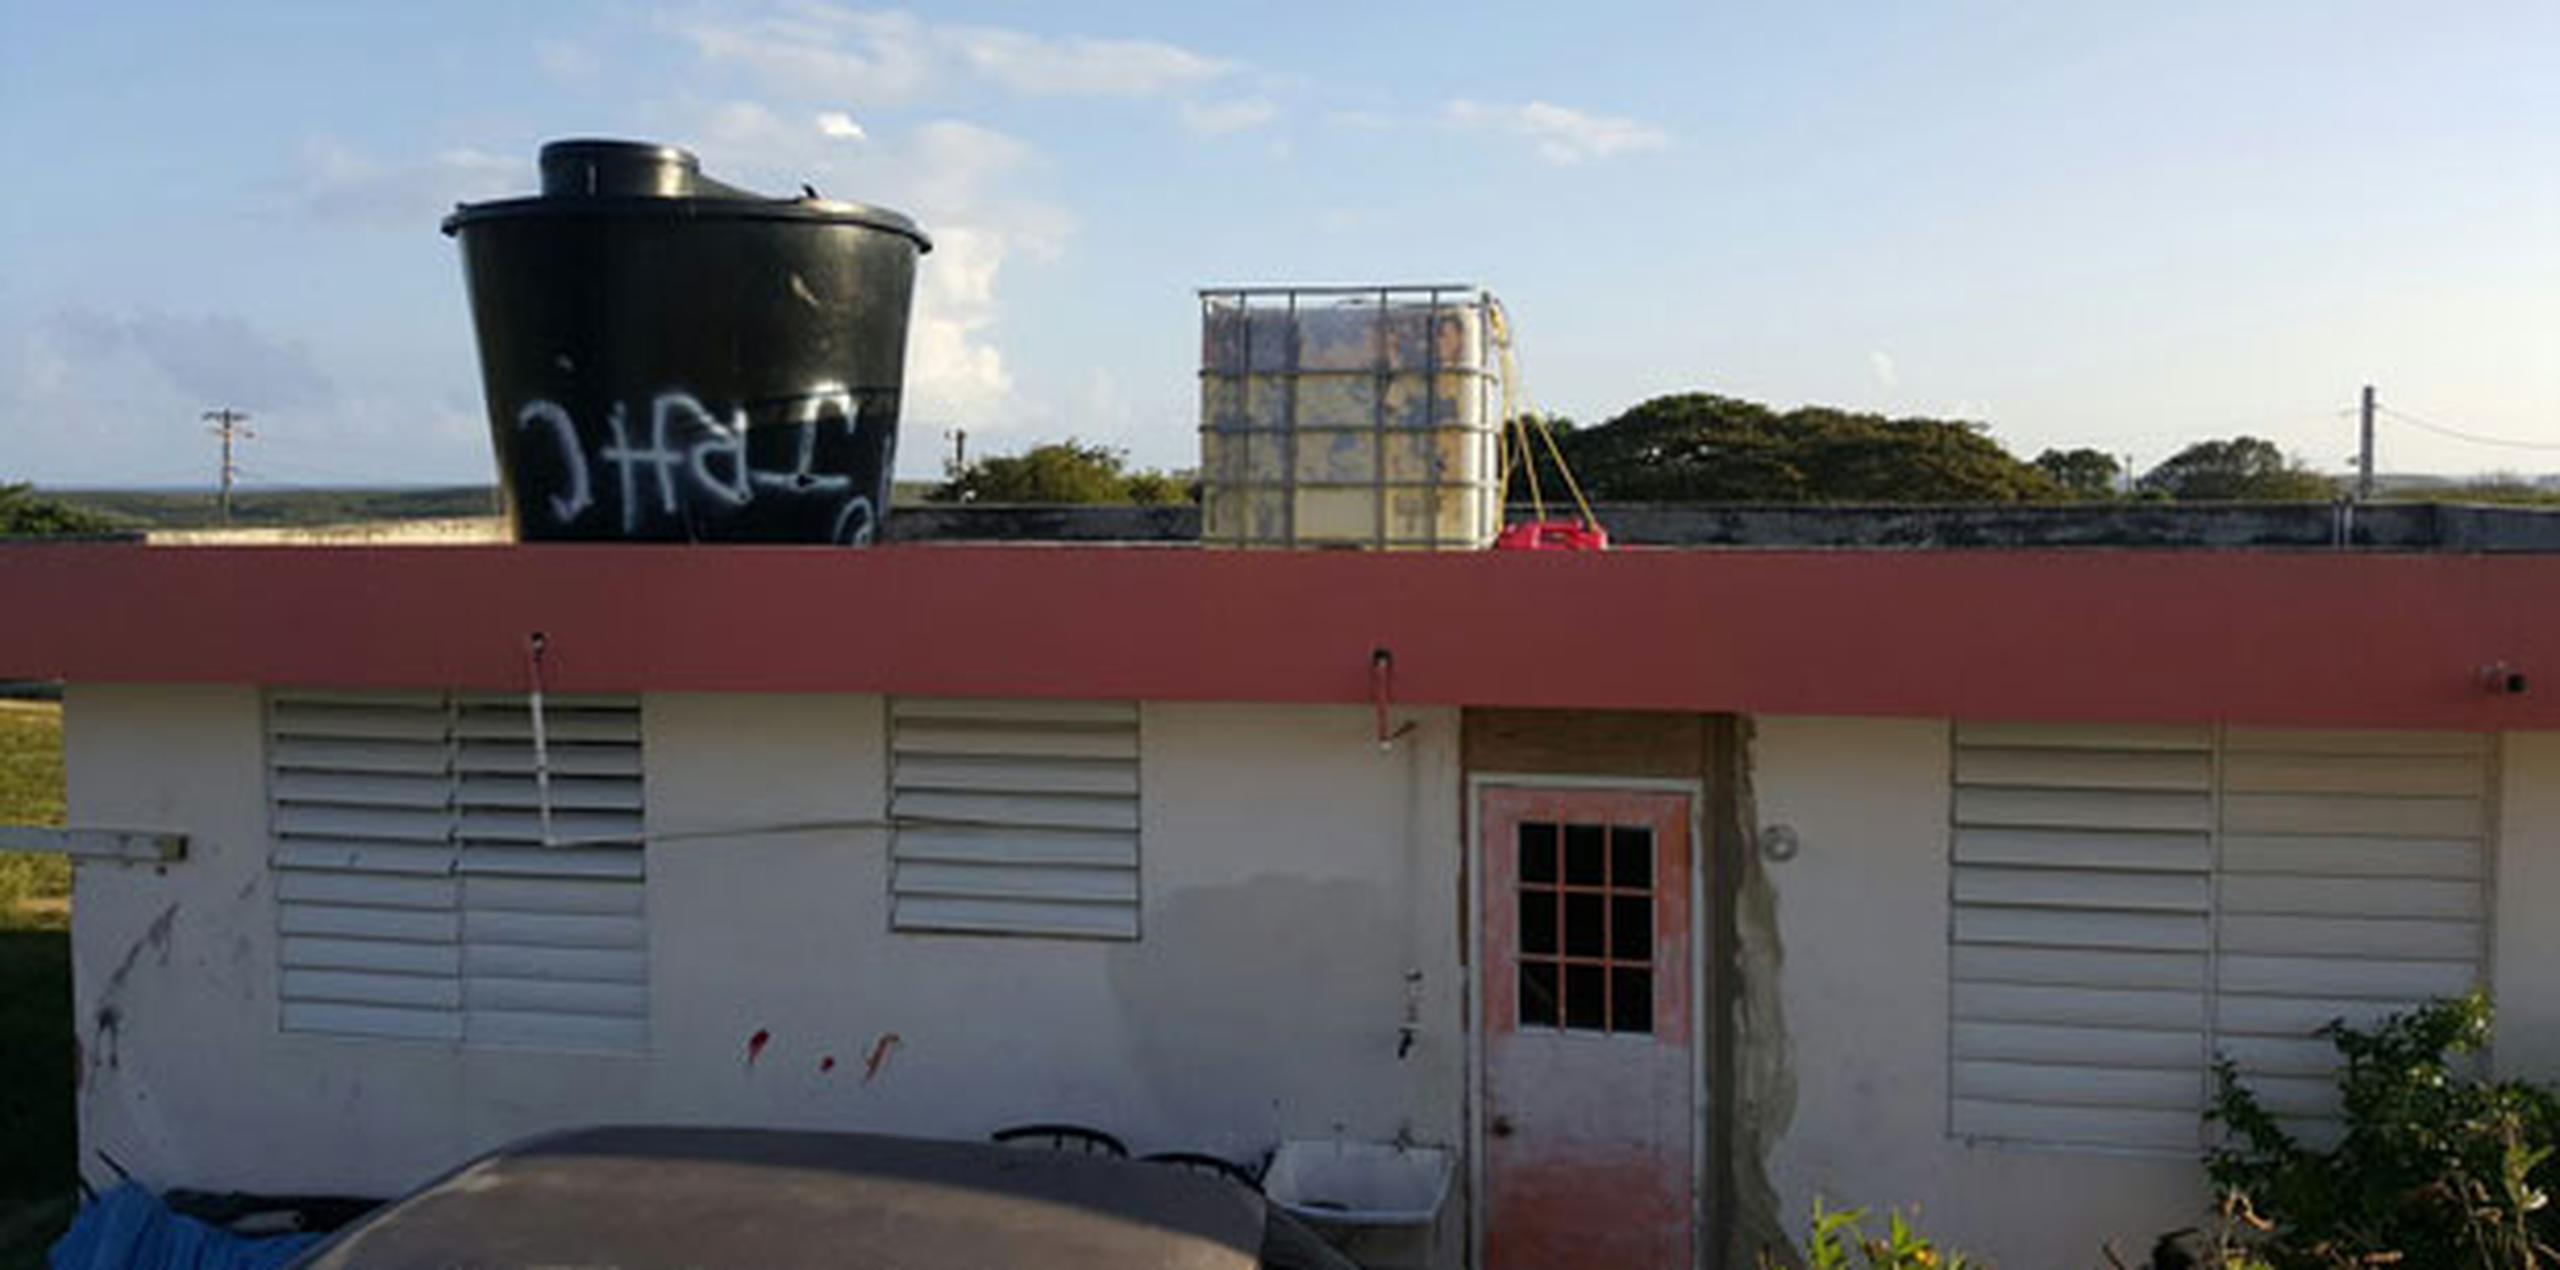 Los residentes ocuparon un proyecto de viviendas que fue abandonado en la Isla Nena, y le hicieron mejoras hasta convertirlo en un lugar habitable. (Suministrada)